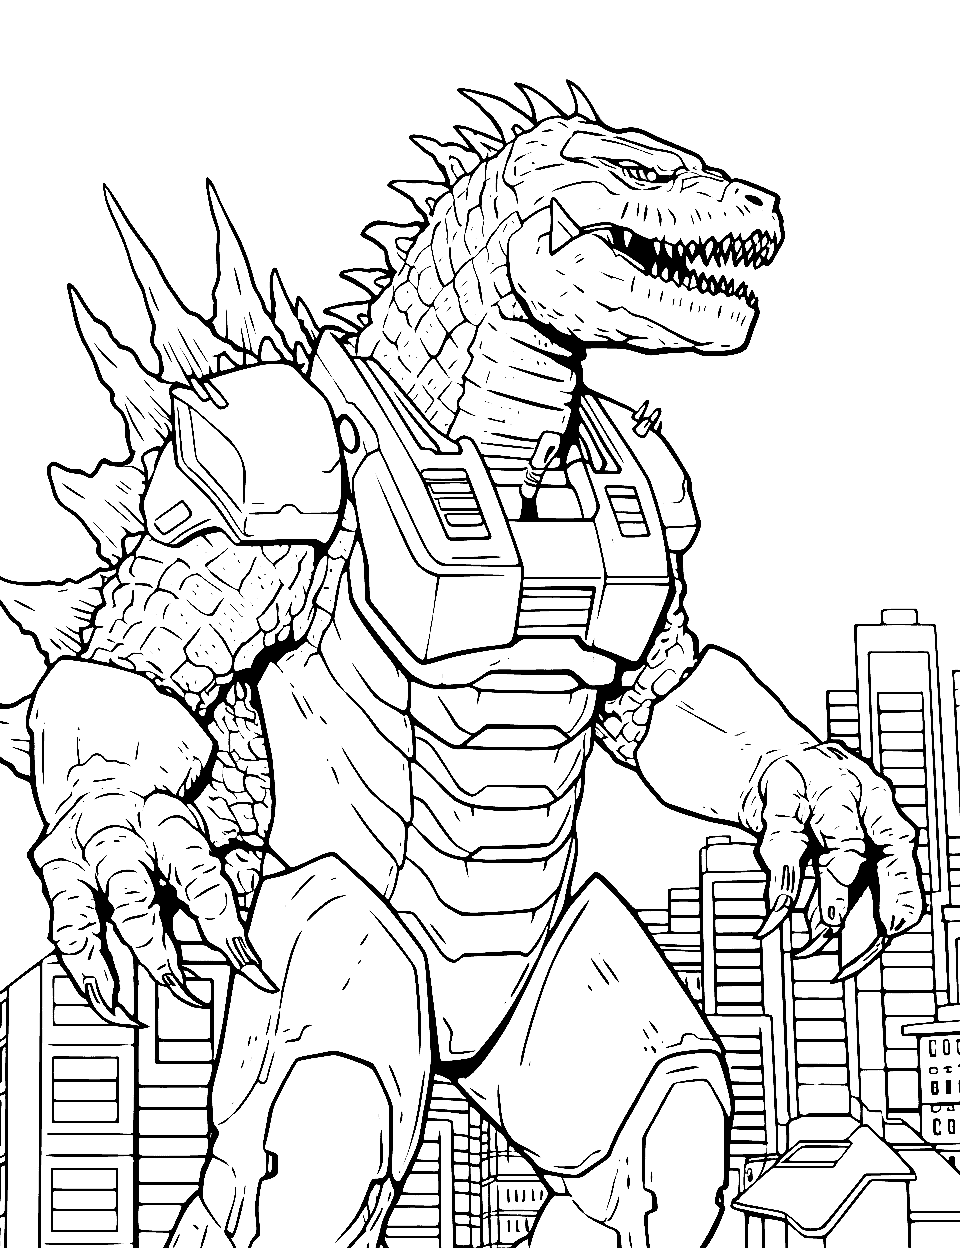 25 Godzilla Coloring Pages: Free Printable Sheets